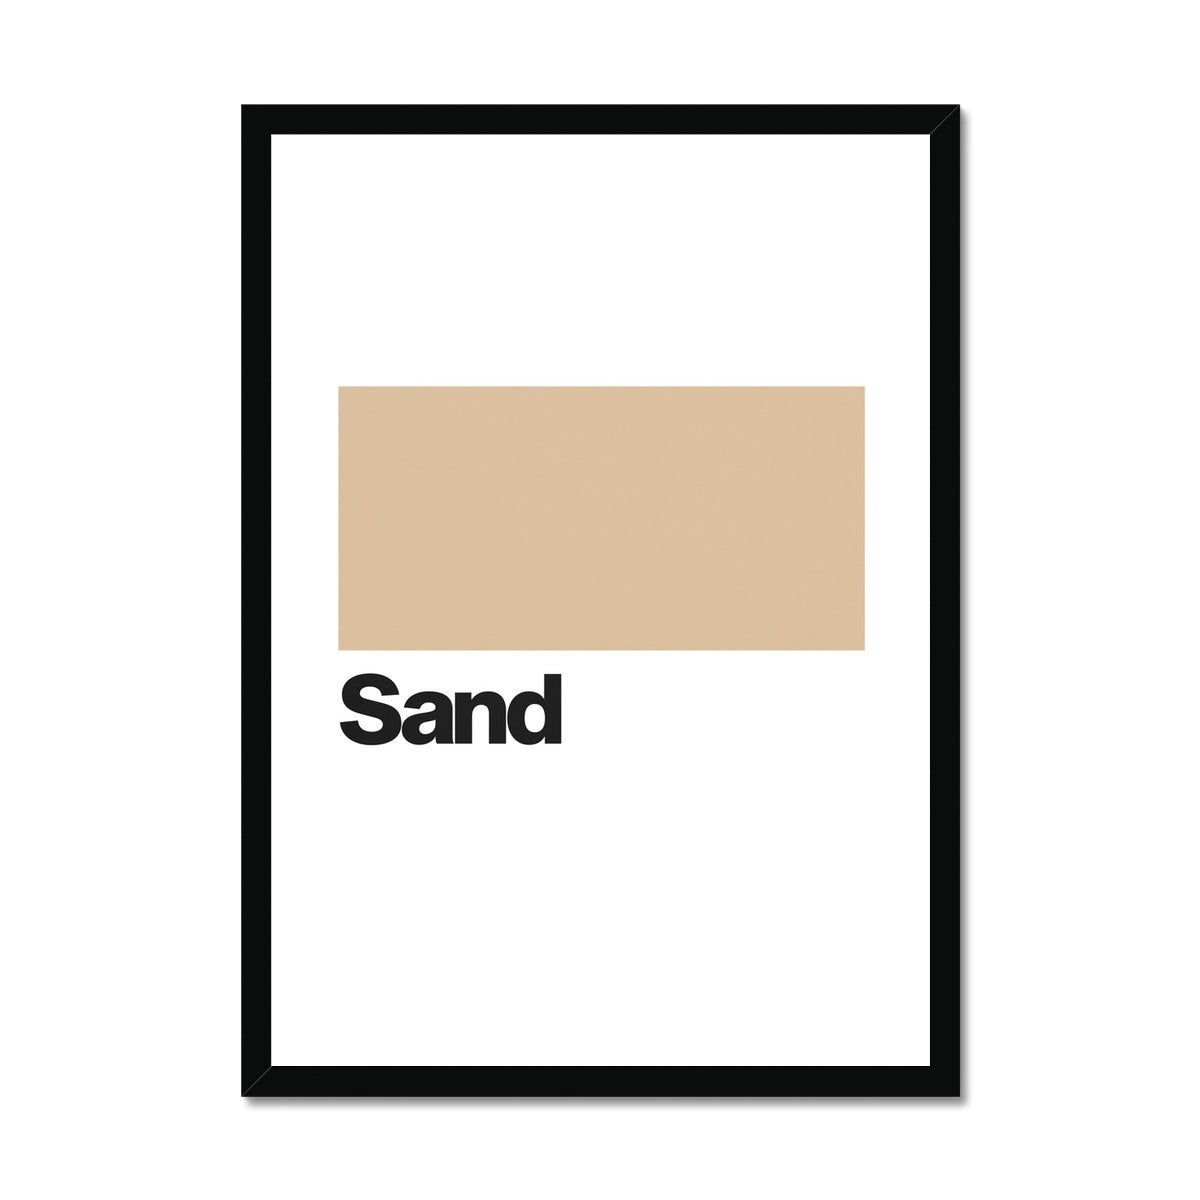 Sand Framed Print